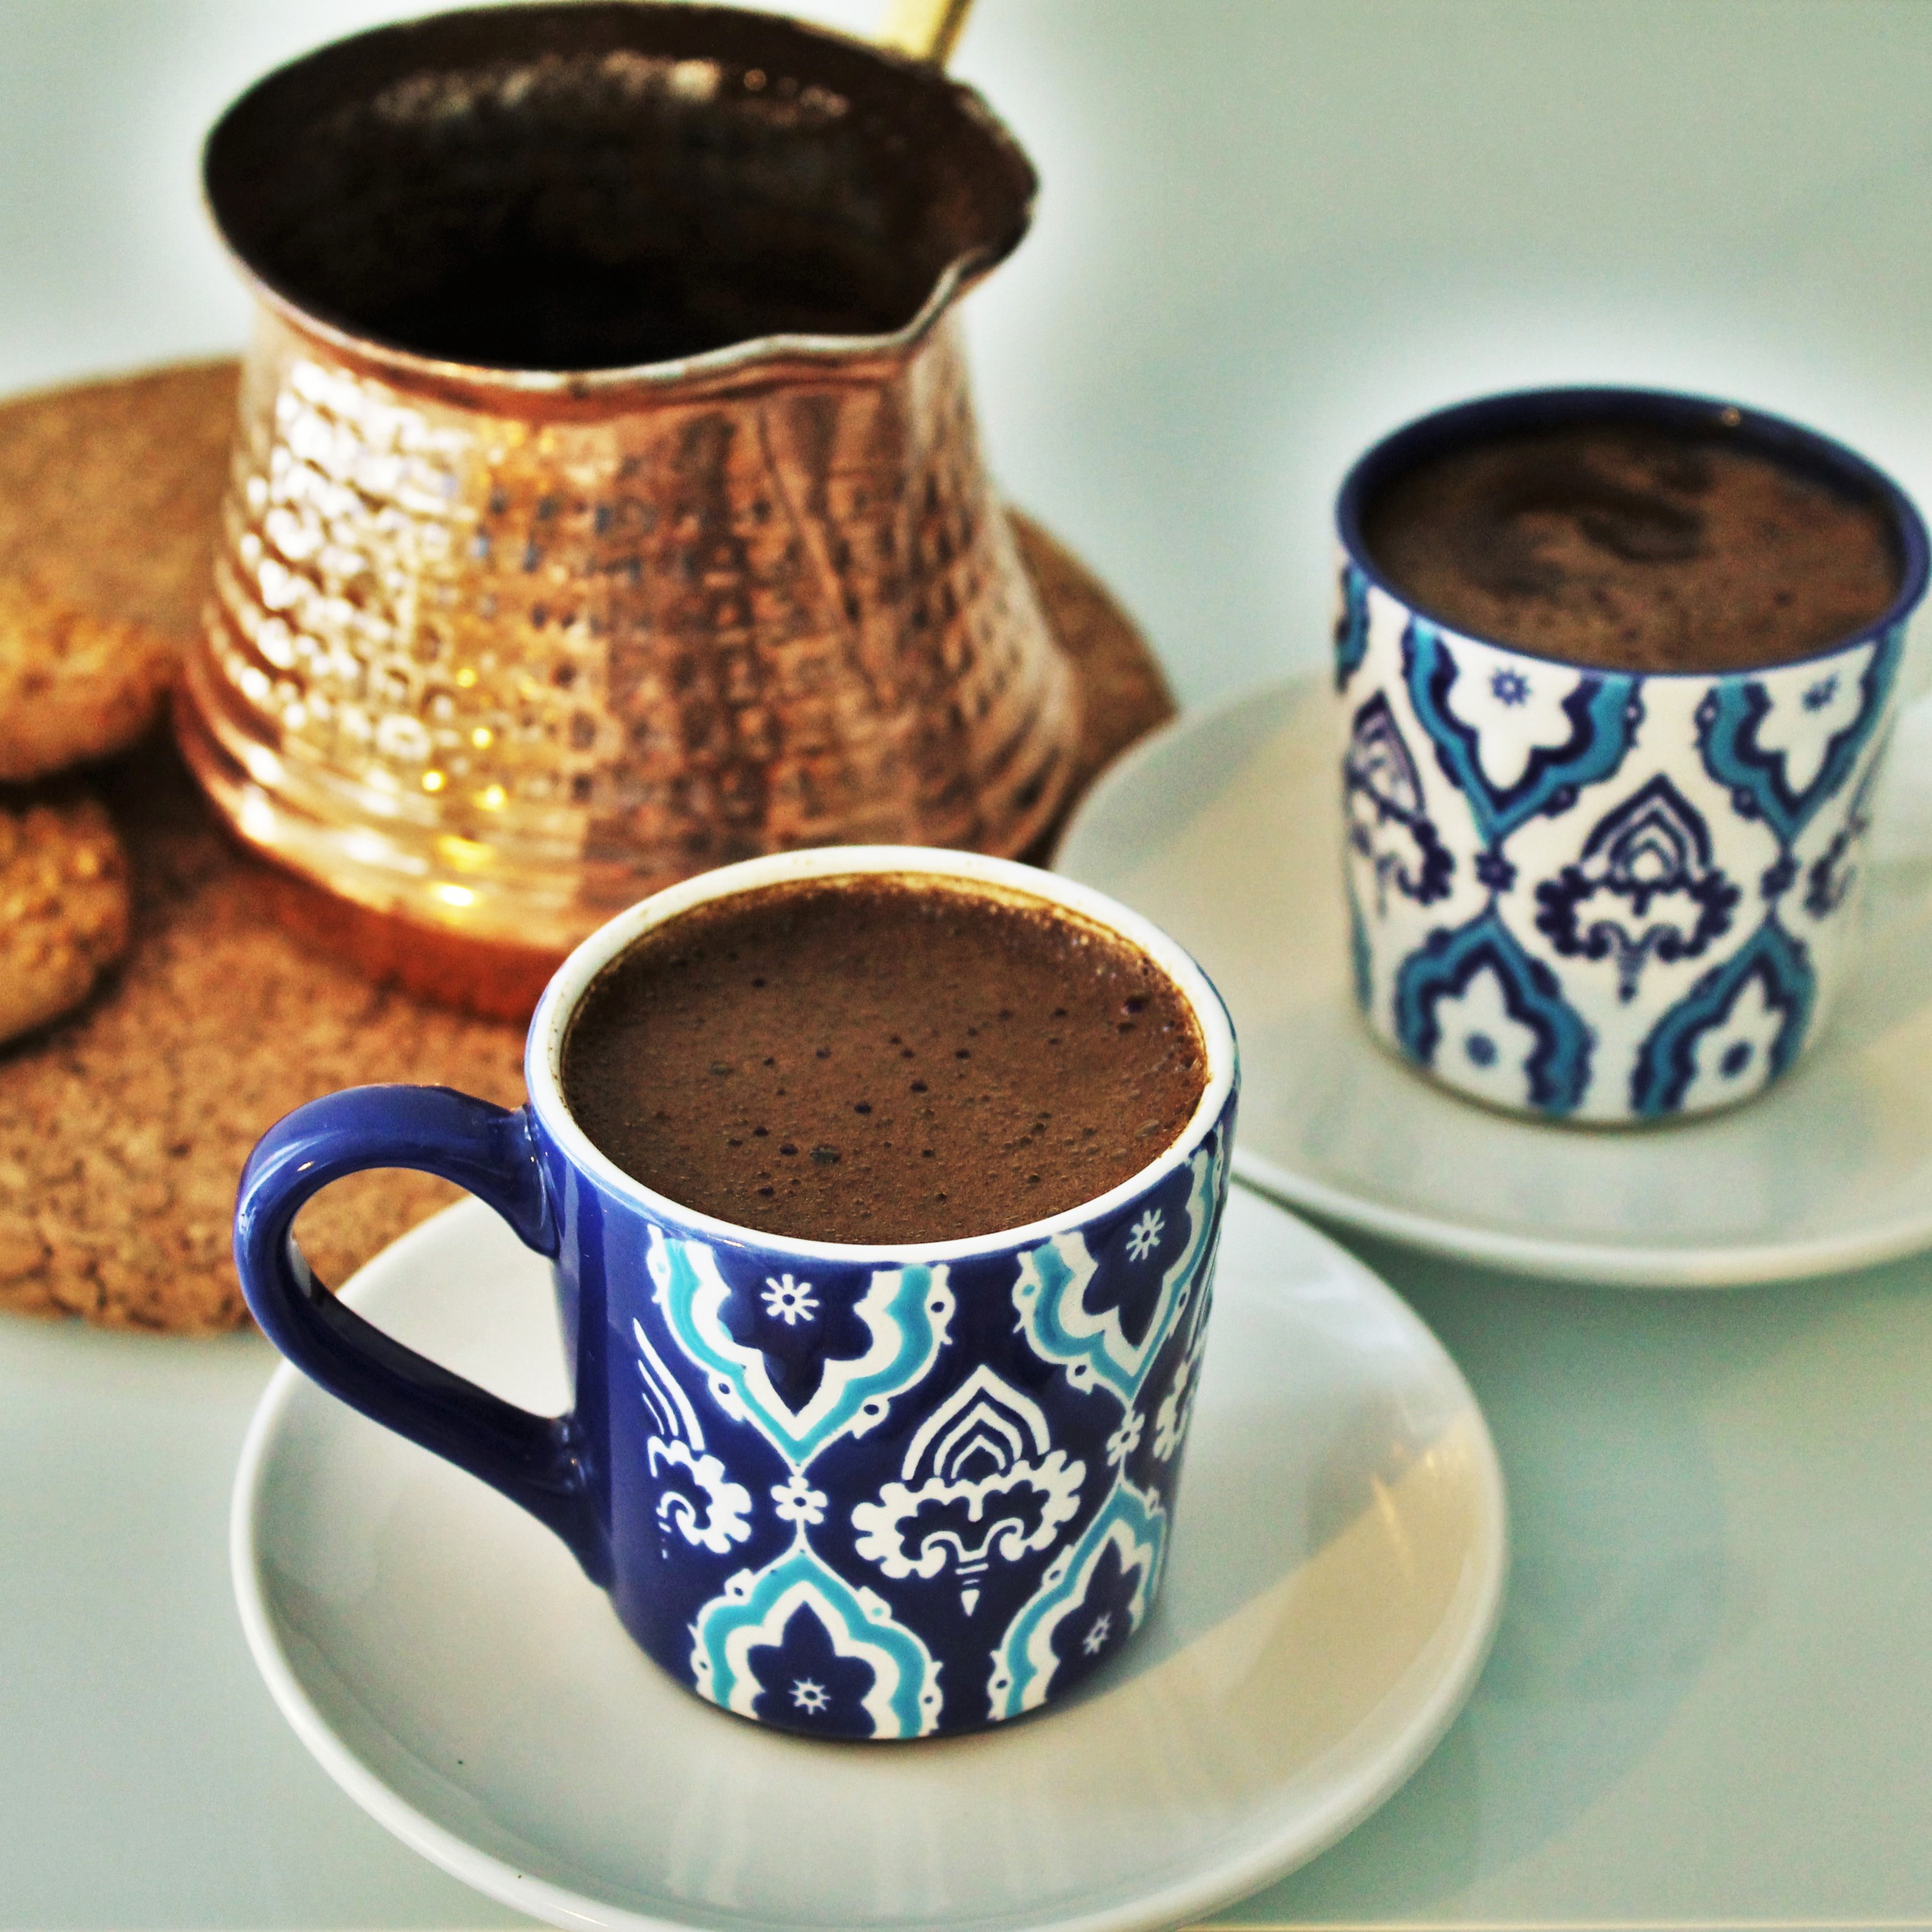 Tyrkisk kaffe opskrift, tyrkisk kaffe, hvordan laver man tyrkisk kaffe, opskrift på tyrkisk kaffe, tyrkiske drikke, tyrkiske varme drikke, tyrkiske opskrifter, hvordan laver man tyrkisk kaffe